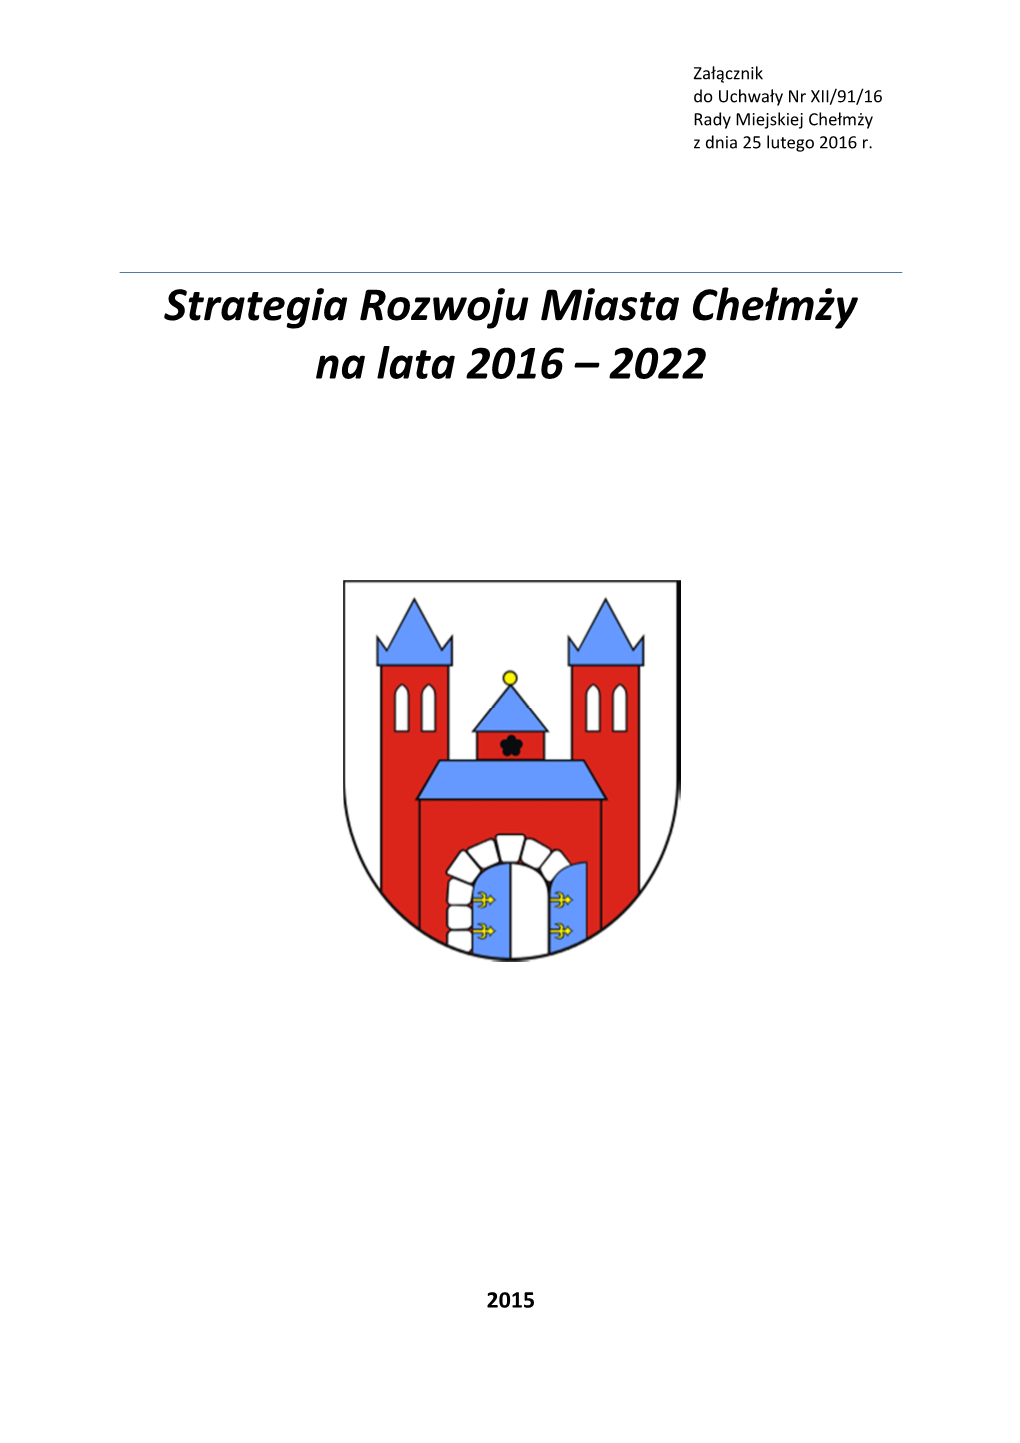 Strategia Rozwoju Miasta Chełmży Na Lata 2016 – 2022